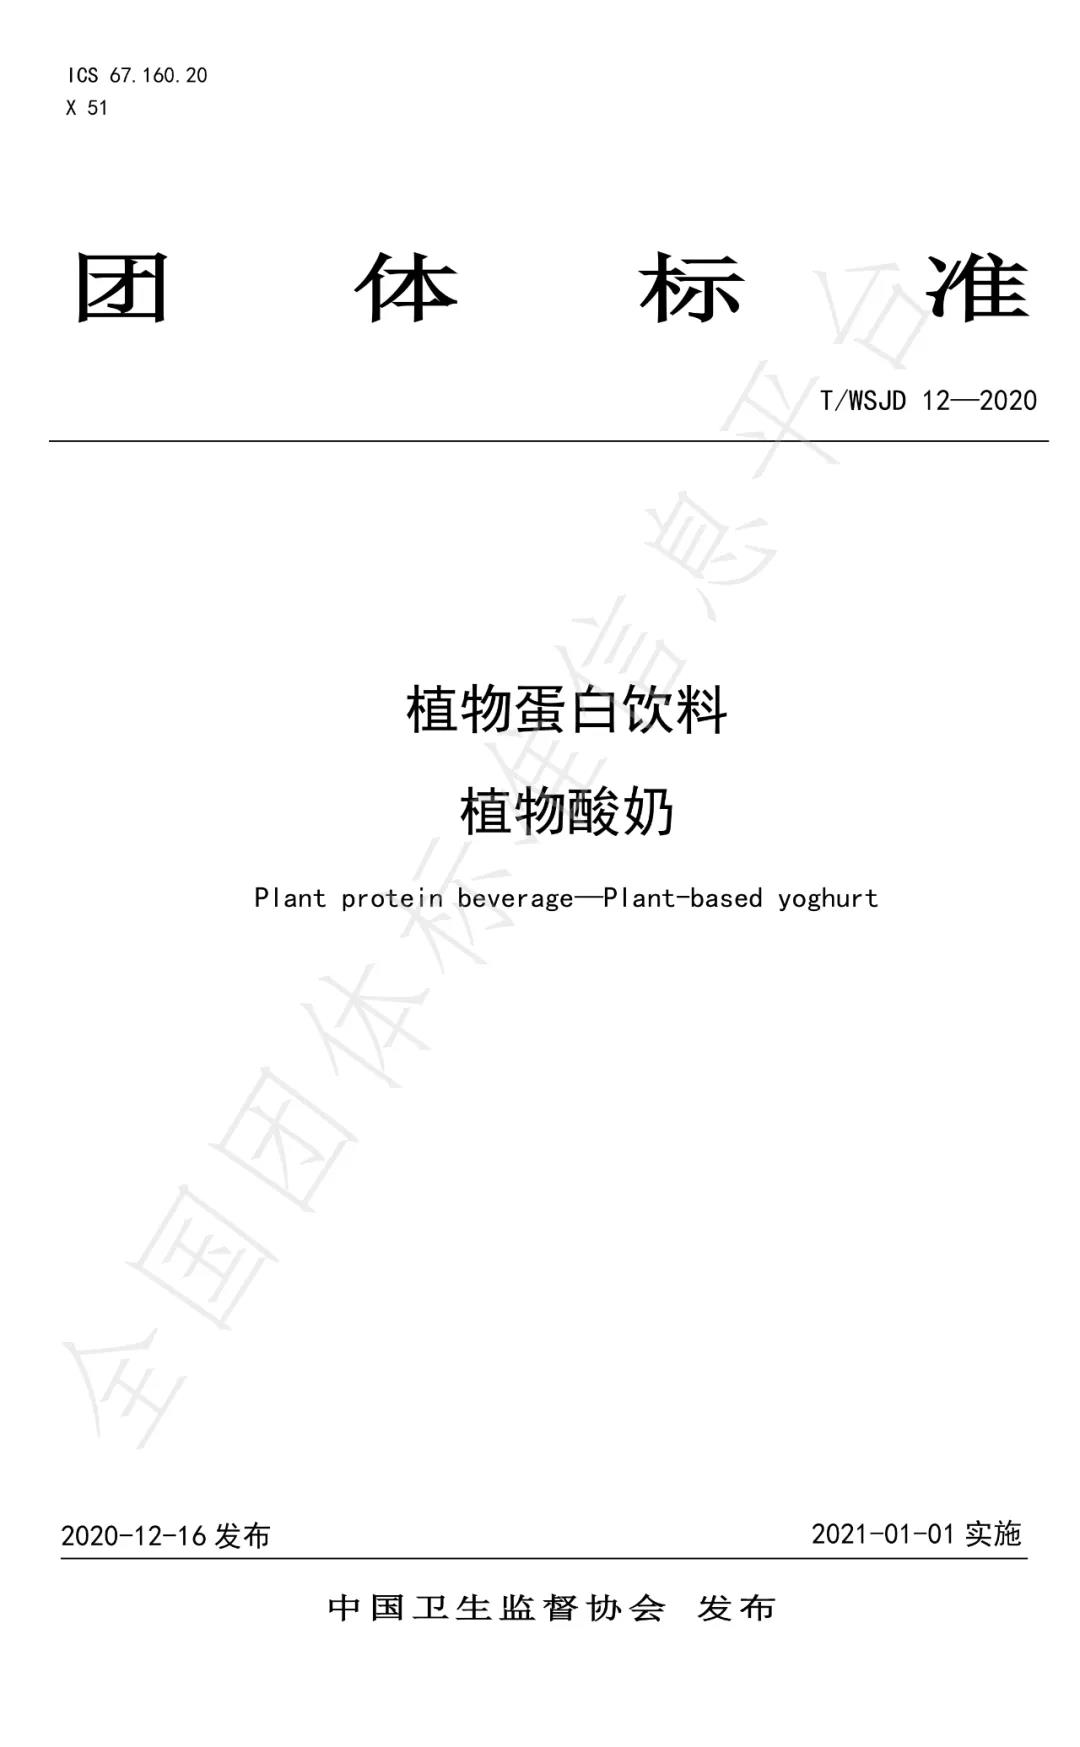 61 29 中国卫生监督协会发布《植物蛋白饮料植物酸奶》团体标准